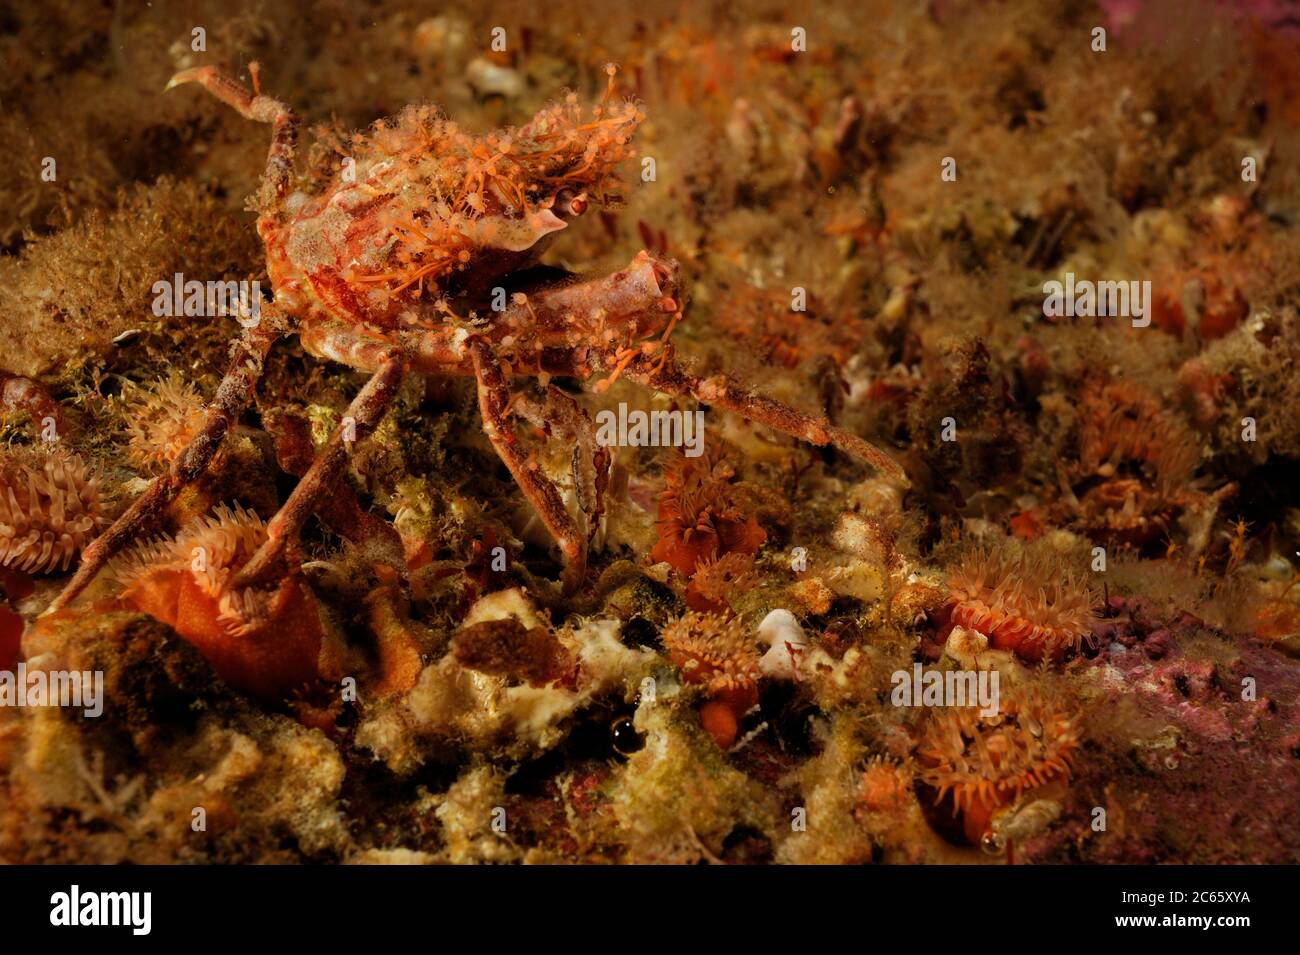 Crabe araignée camouflé (Hyas coarctatus) décoré d'hydroïdes, océan Atlantique, Strømsholmen, Nord-Ouest de la Norvège Banque D'Images